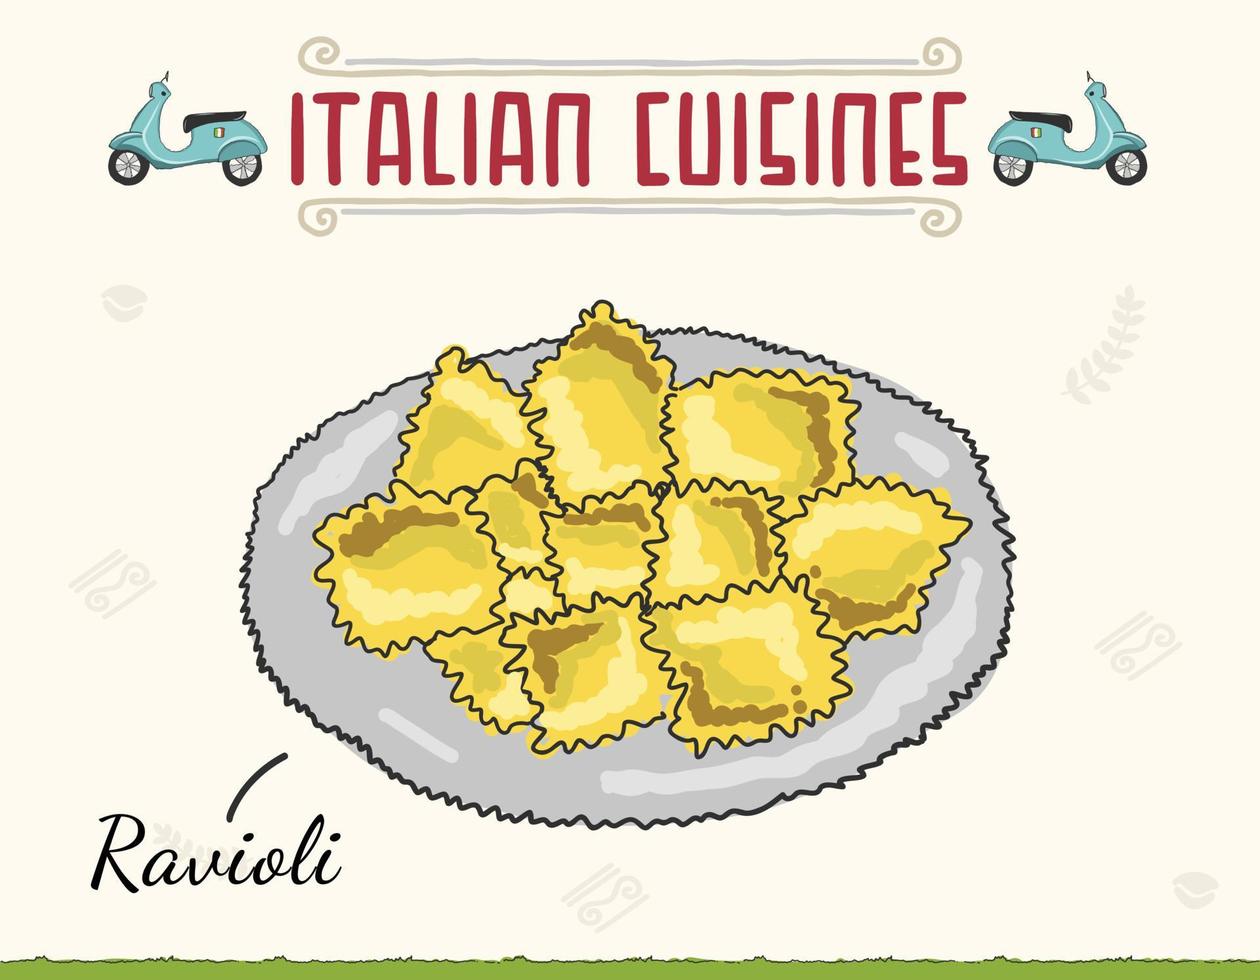 ravioli gestoomde pasta in plaat. Italiaanse keuken getekende badge. Italiaanse keuken. pastaravioli. vector illustratie cartoon platte pictogram geïsoleerd op wit. minimale gekleurde geïsoleerde vectorillustratie.